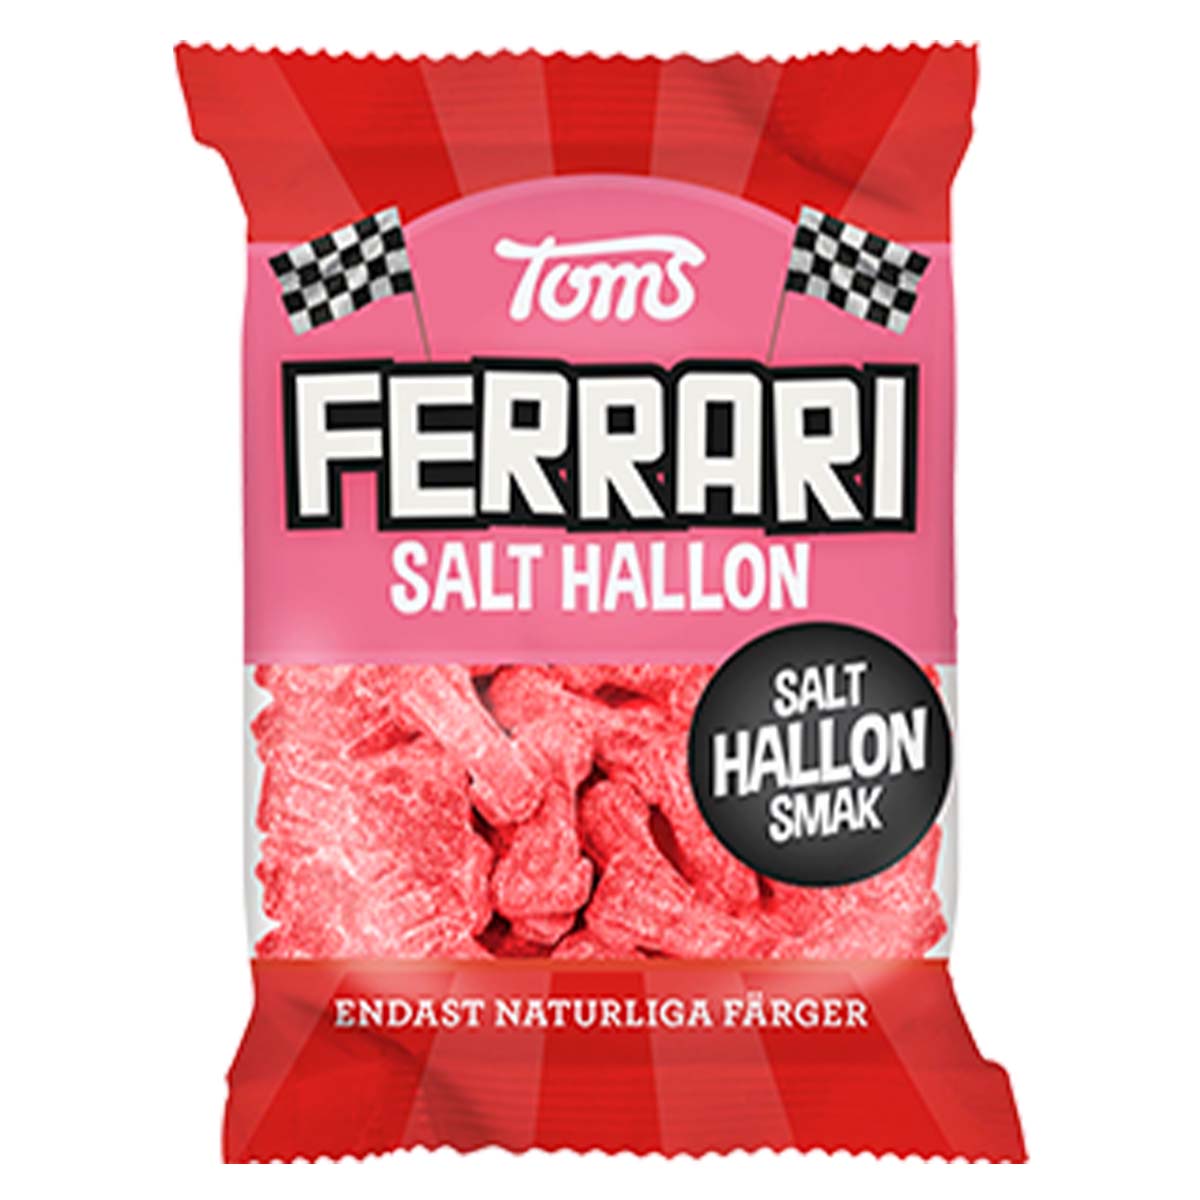 Godispåse Ferrari salt hallon 120 g